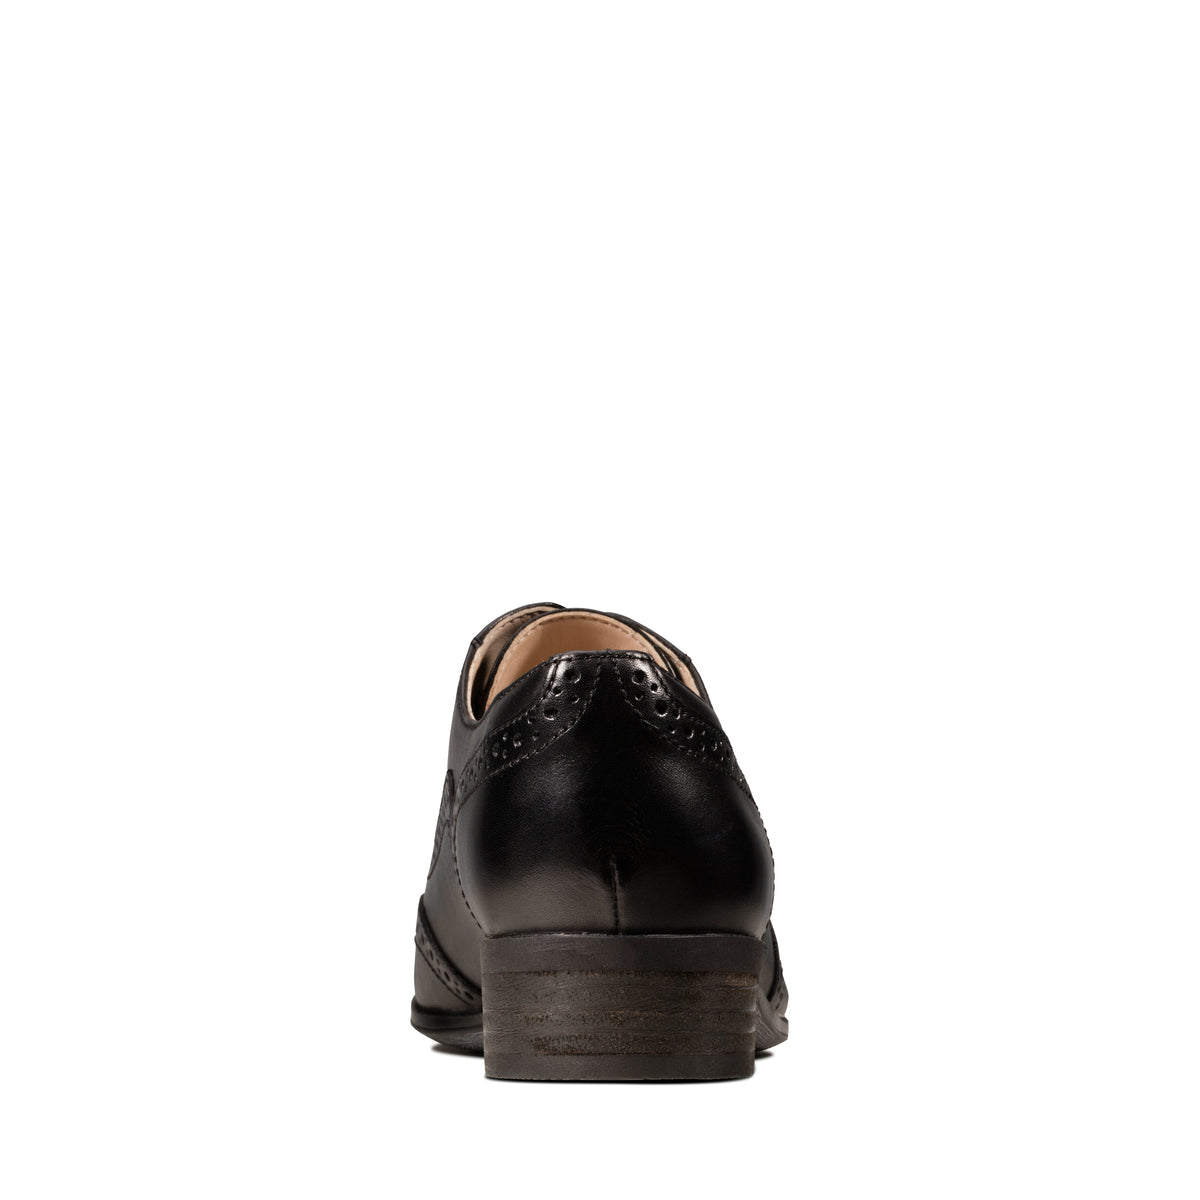 Zapatos Oxford De La Marca Clarks Para Mujer Modelo Hamble Oak Black Leather En Color Negro